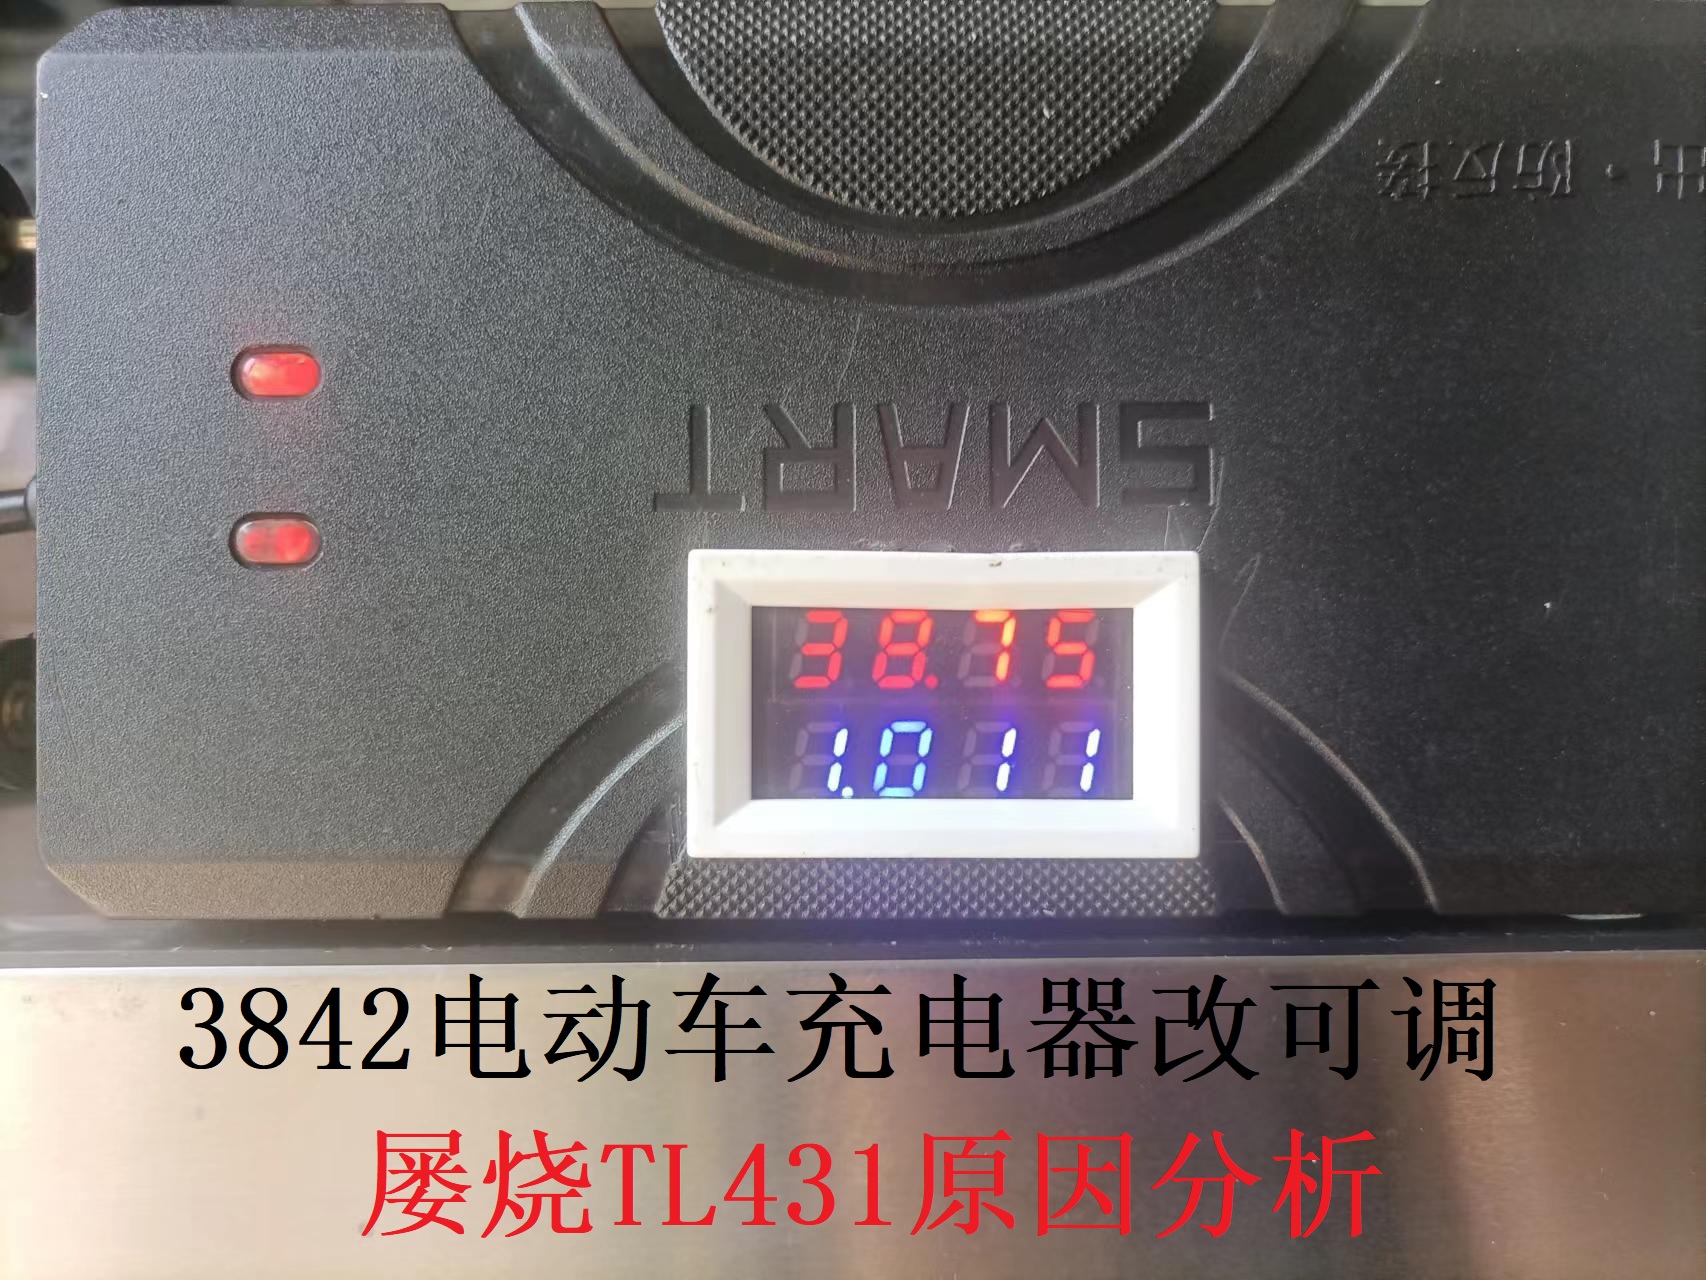 3842電動(dòng)車(chē)充電器改可調后開(kāi)機時(shí)屢燒TL431原因及對策